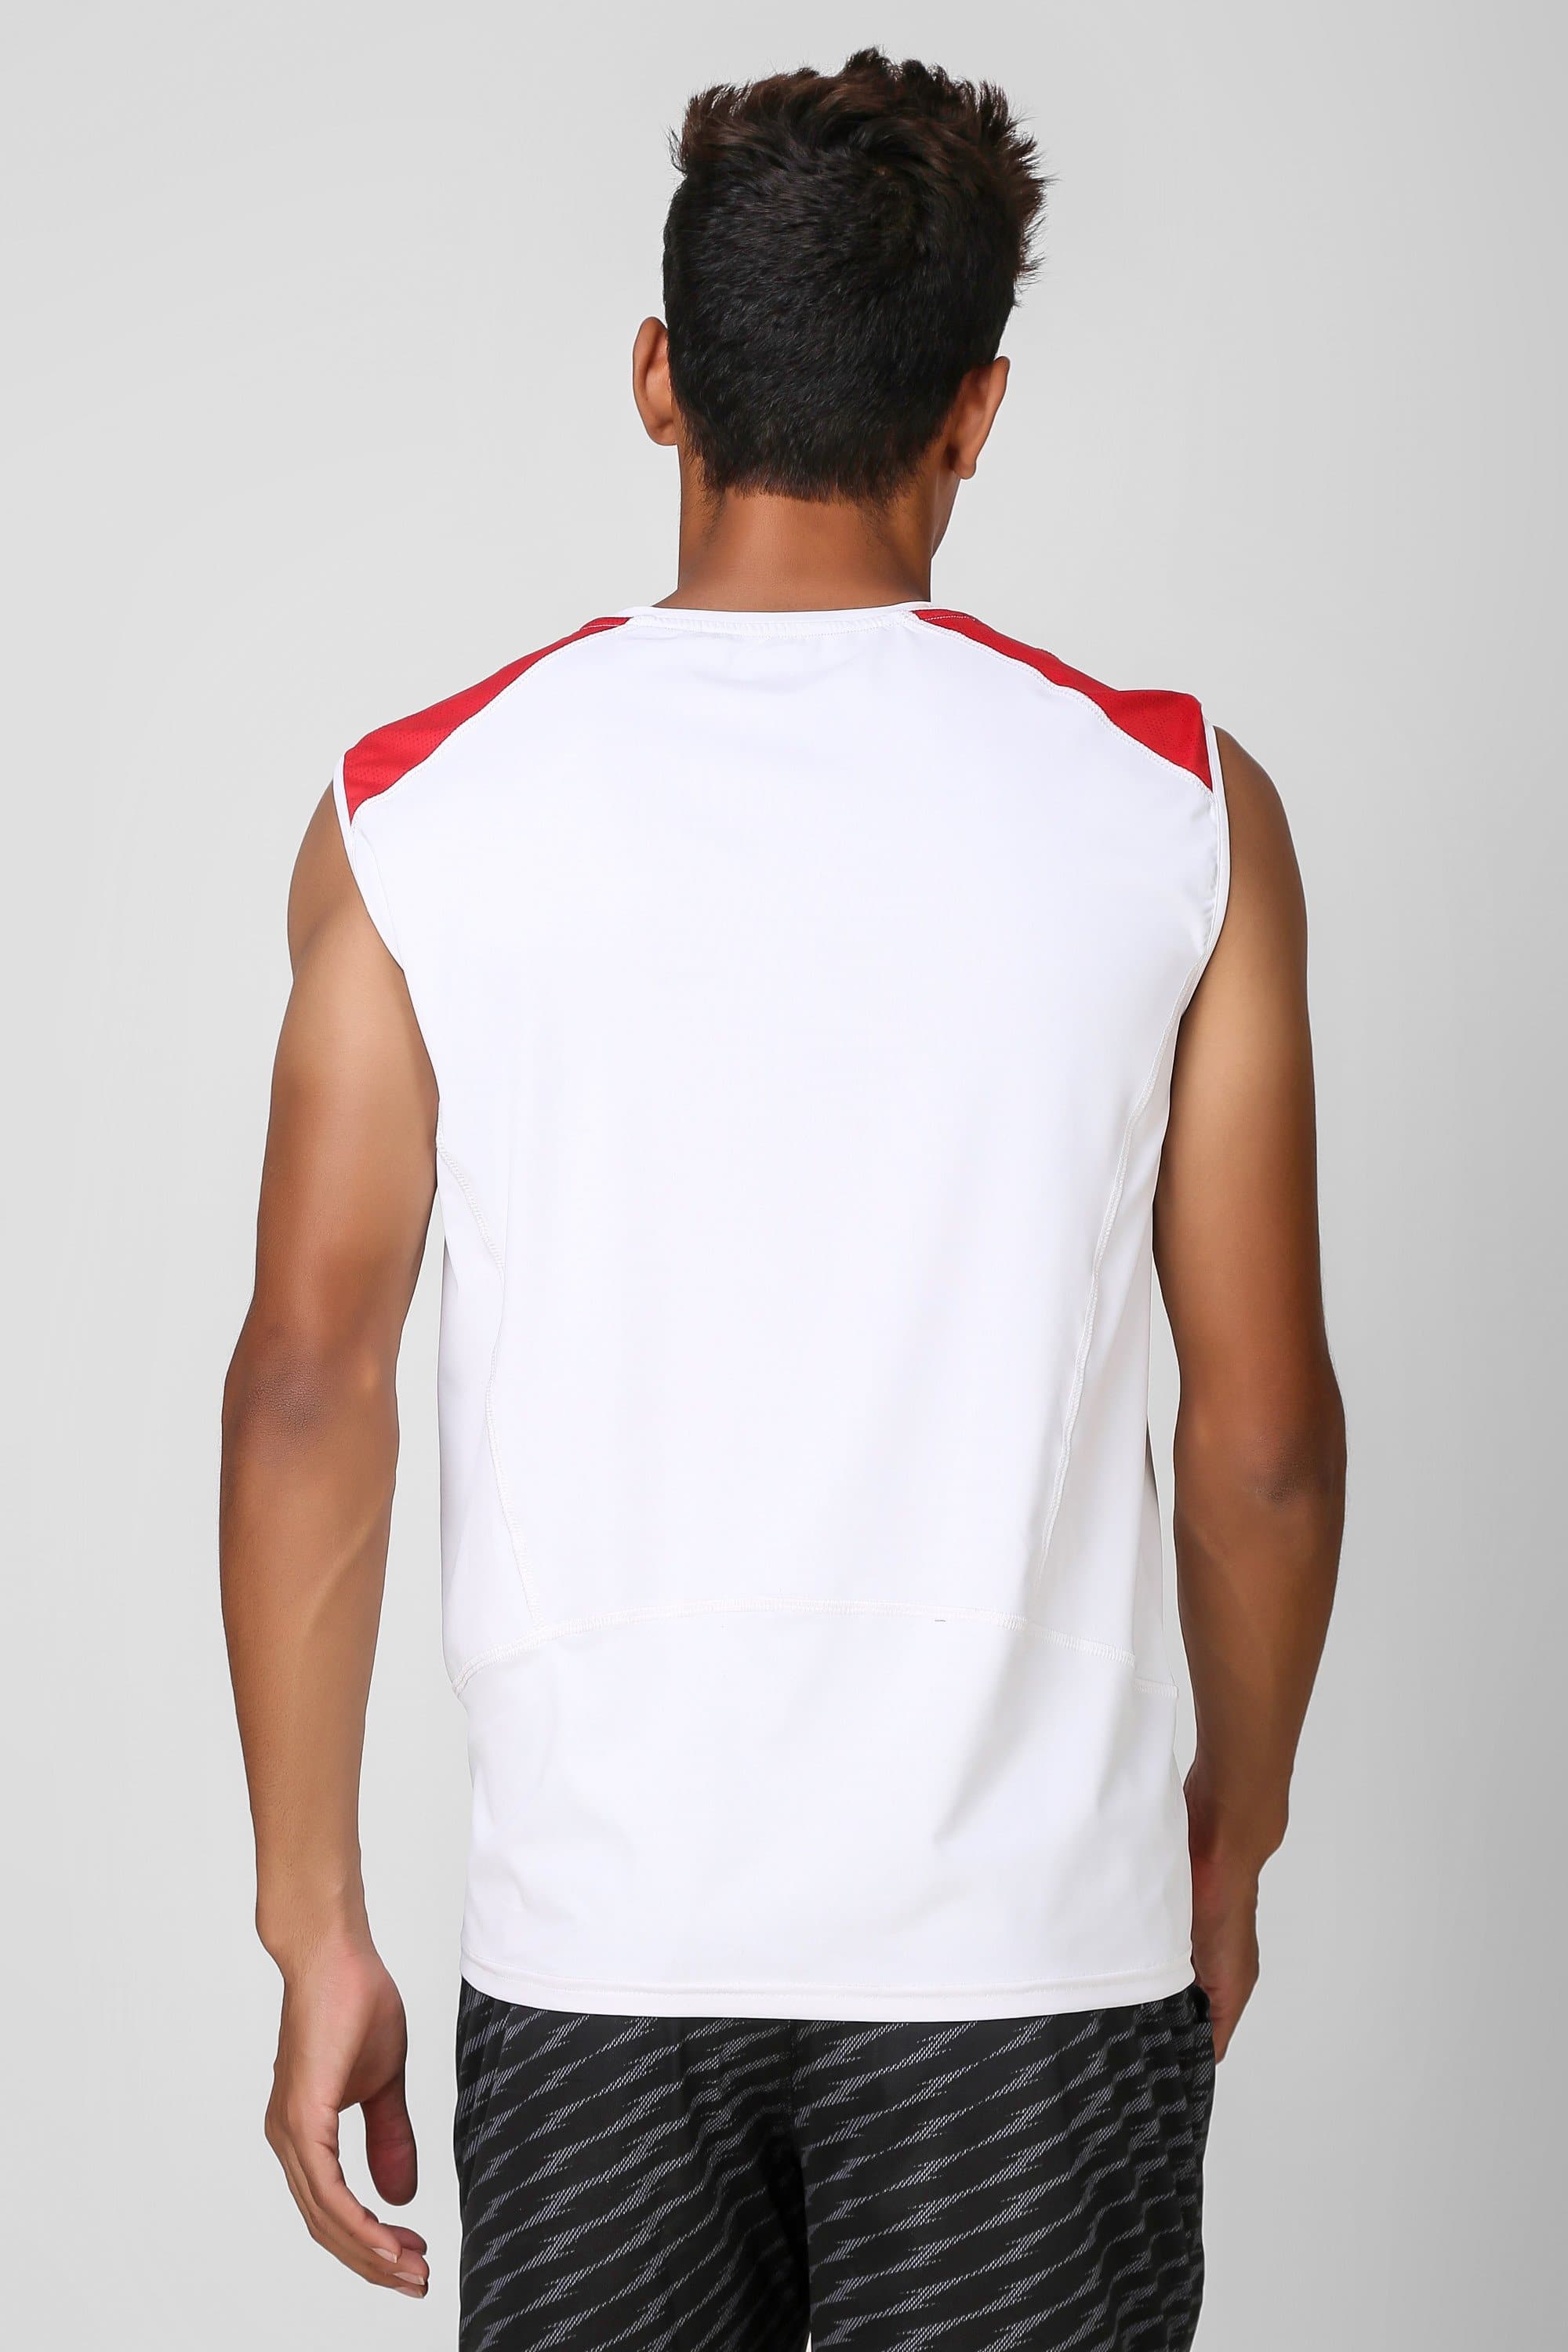 Camo Print Stretchable Sleeveless Tshirt 3